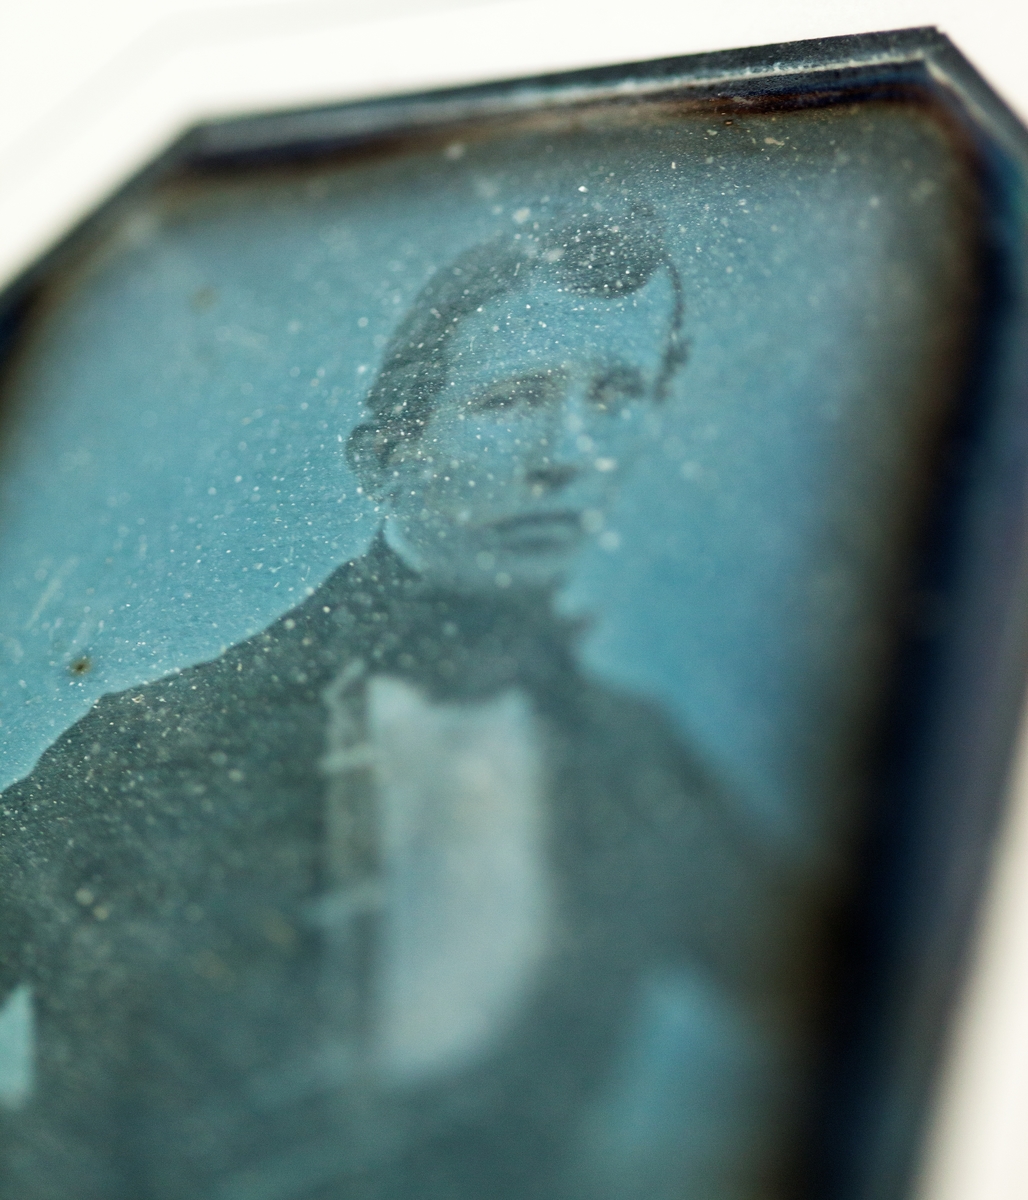 Undervisningsmaterial. Exempel på äldre fotografiska förfaranden. Daguerreotyp. Porträtt av okänd man. Tidigt 1840-tal. Troligen tagit utomhus av kringresande fotograf.